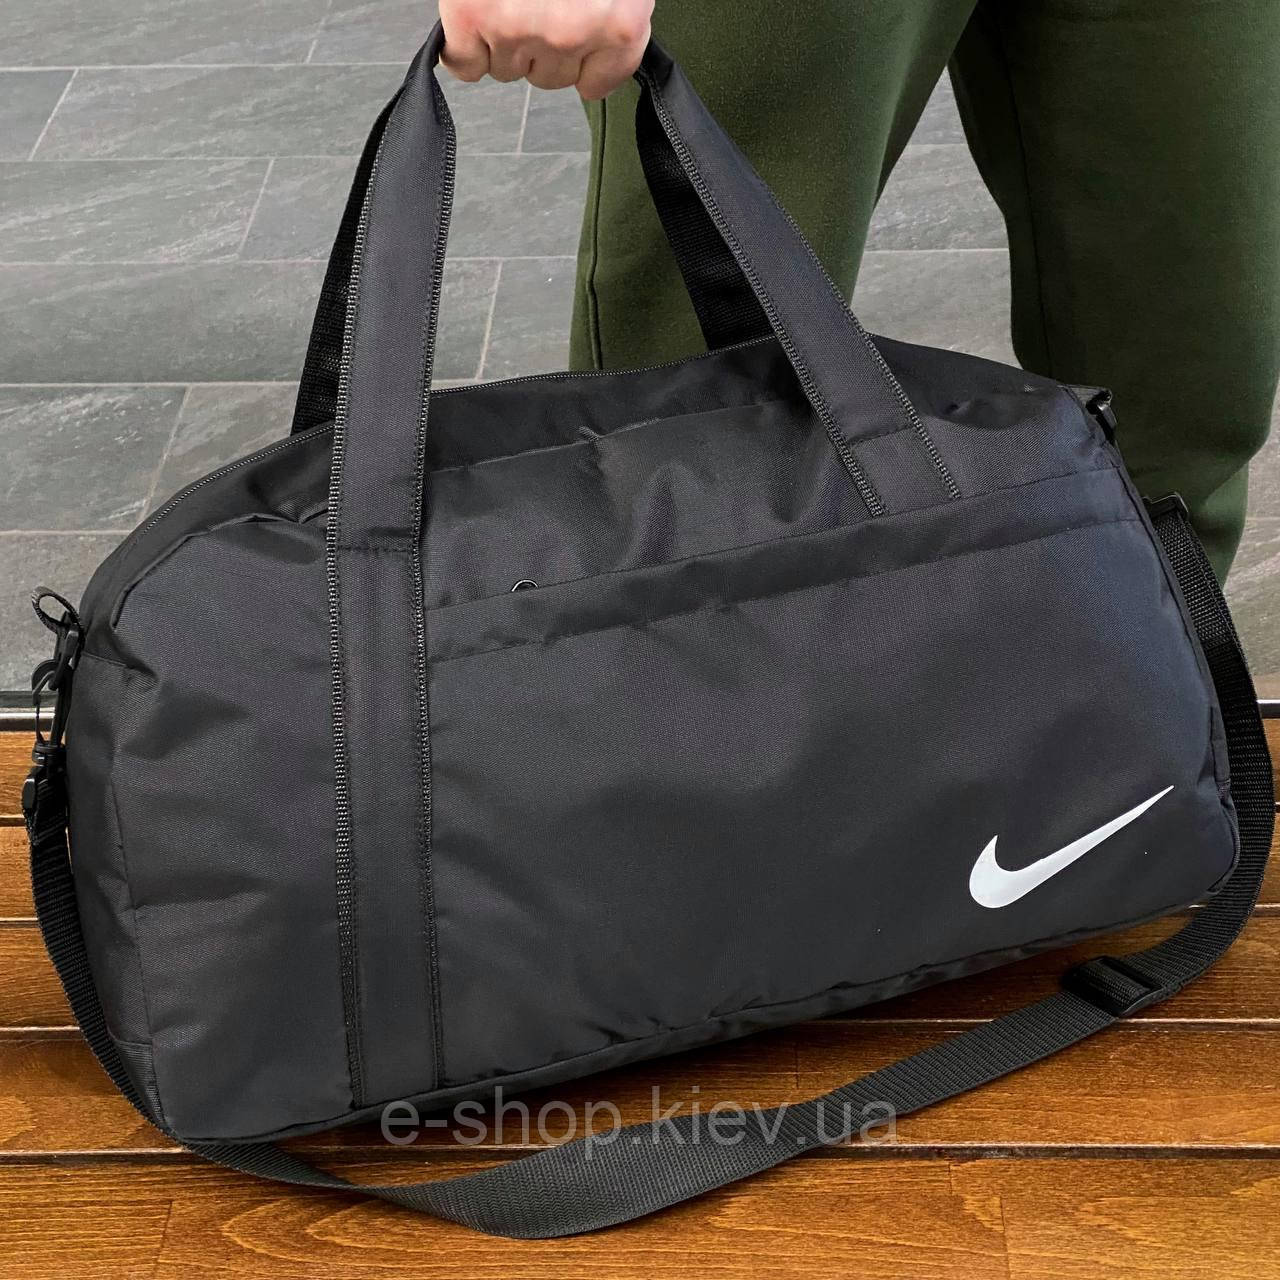 Чоловіча спортивна сумка Nike для тренувань Міські дорожні сумки Найк